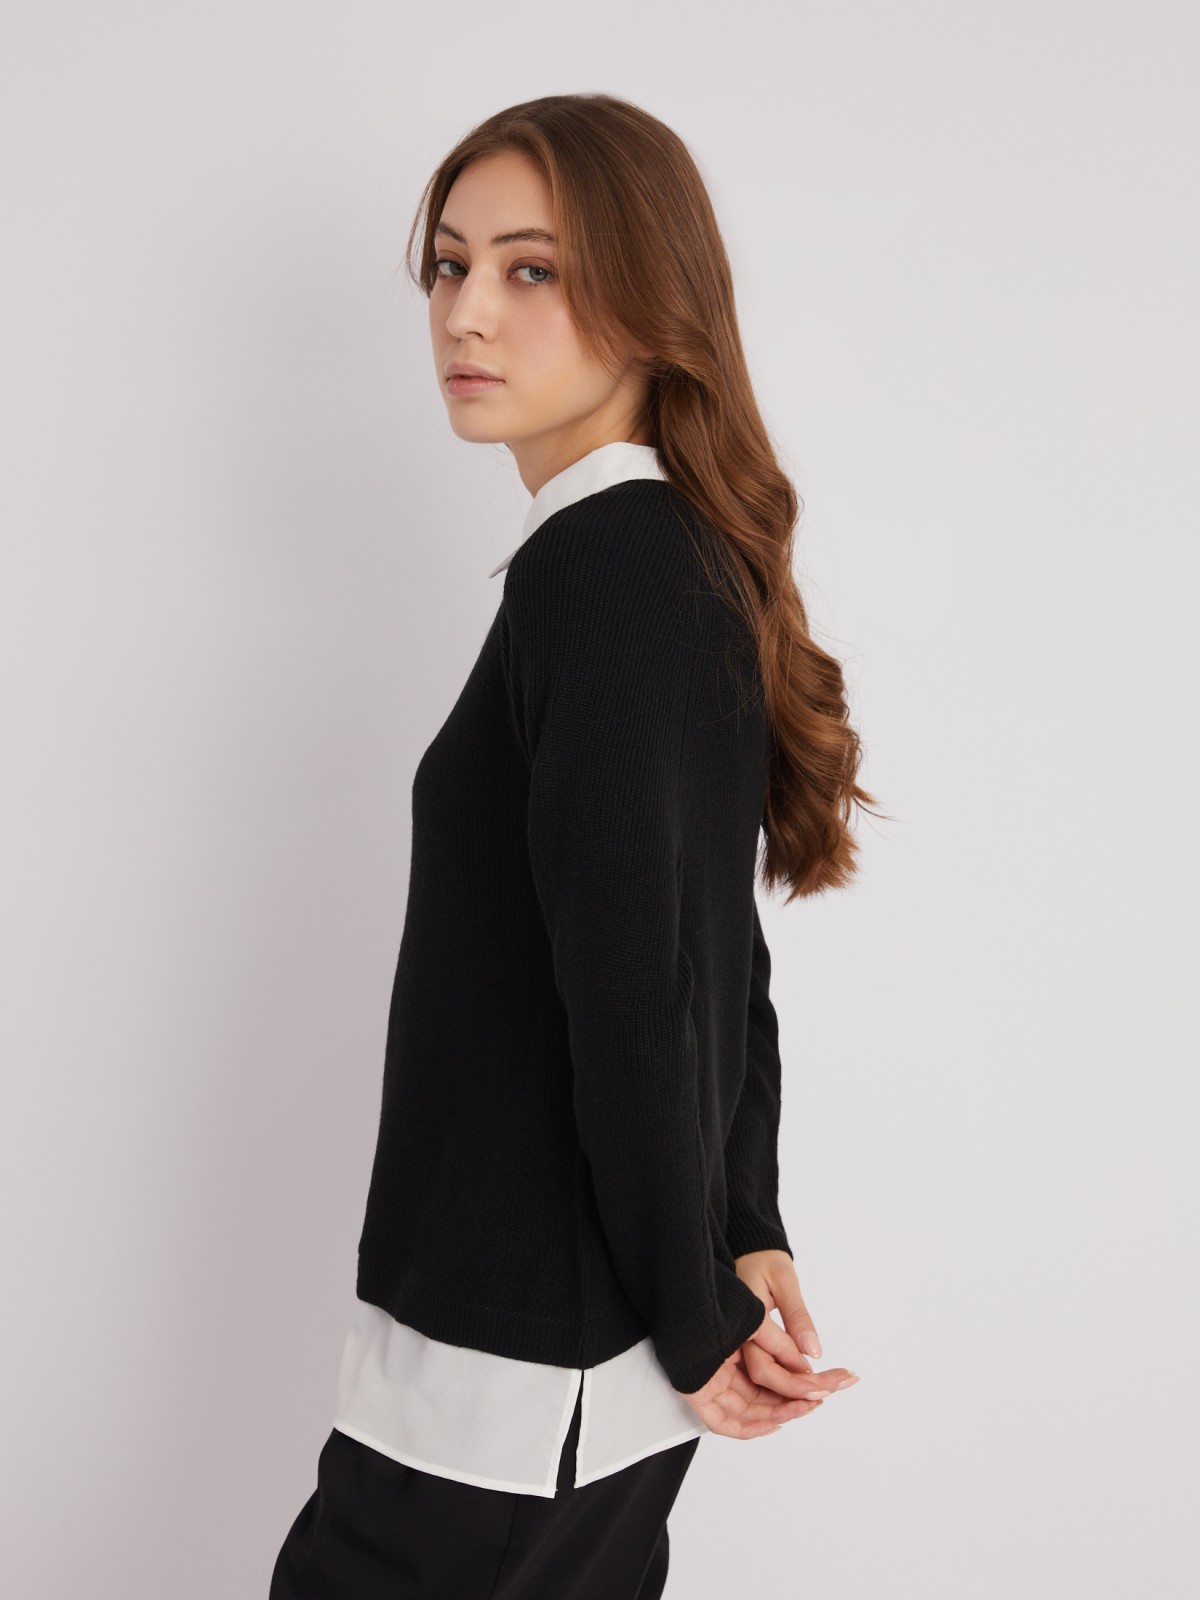 Комбинированный джемпер с имитацией блузки zolla 223326732013, цвет черный, размер XS - фото 4